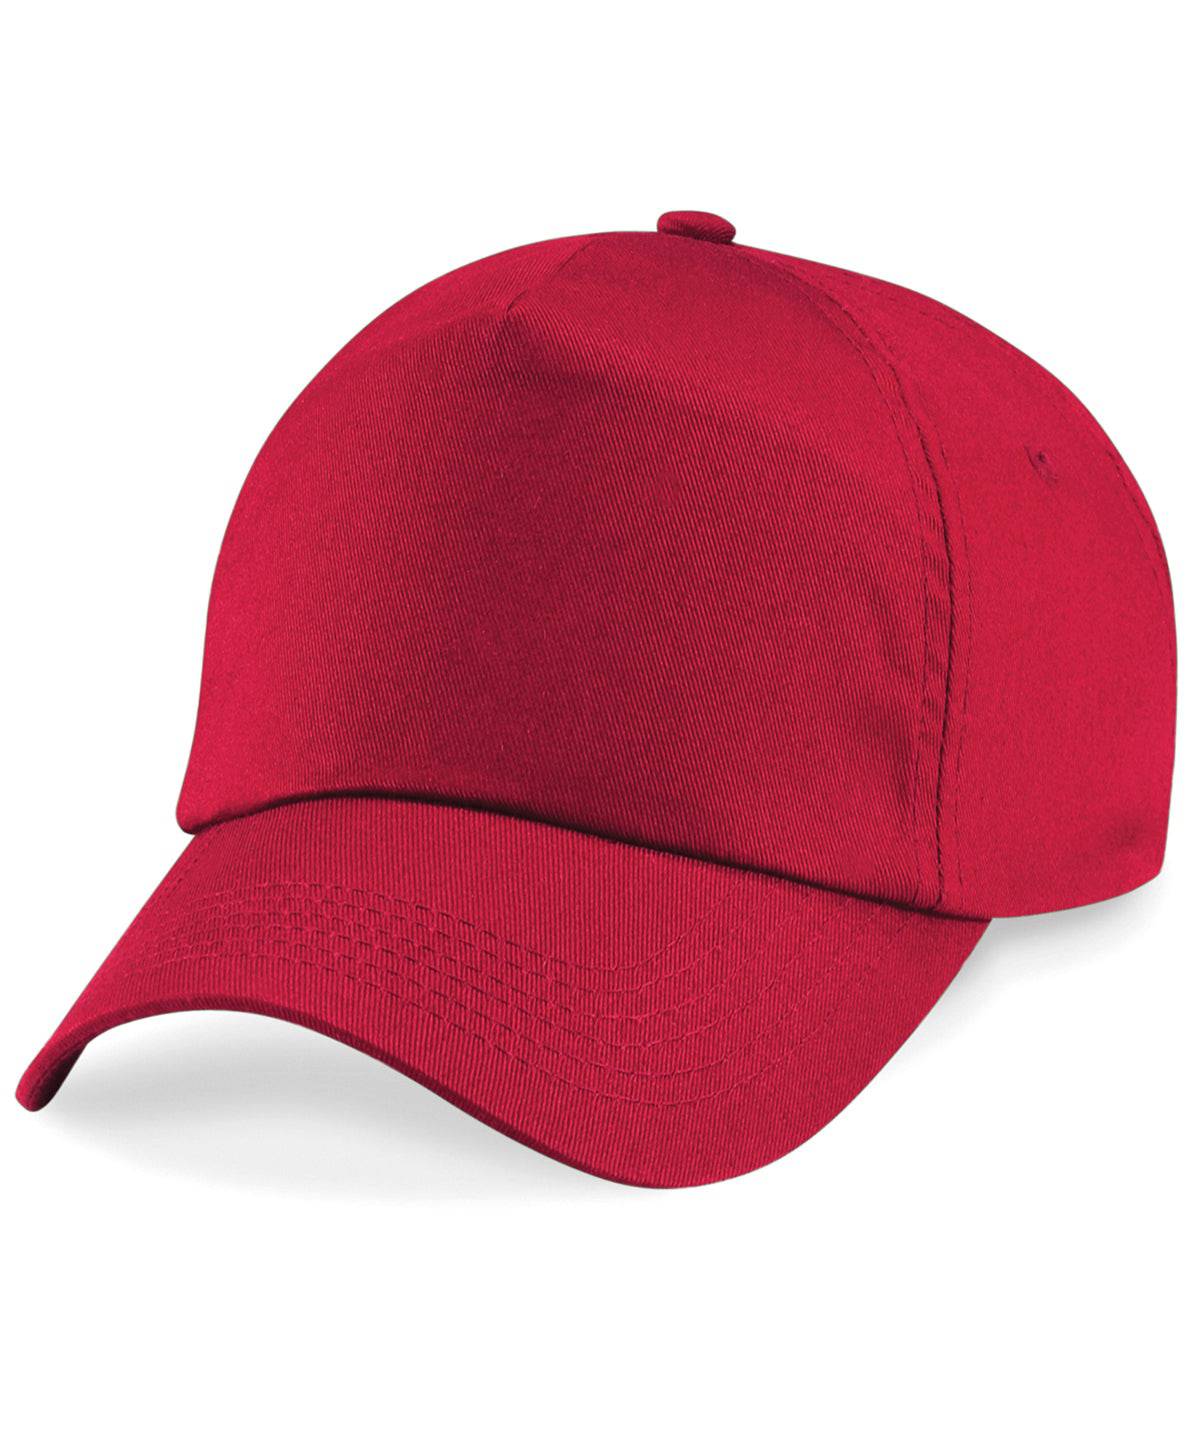 Classic Red - Junior original 5-panel cap